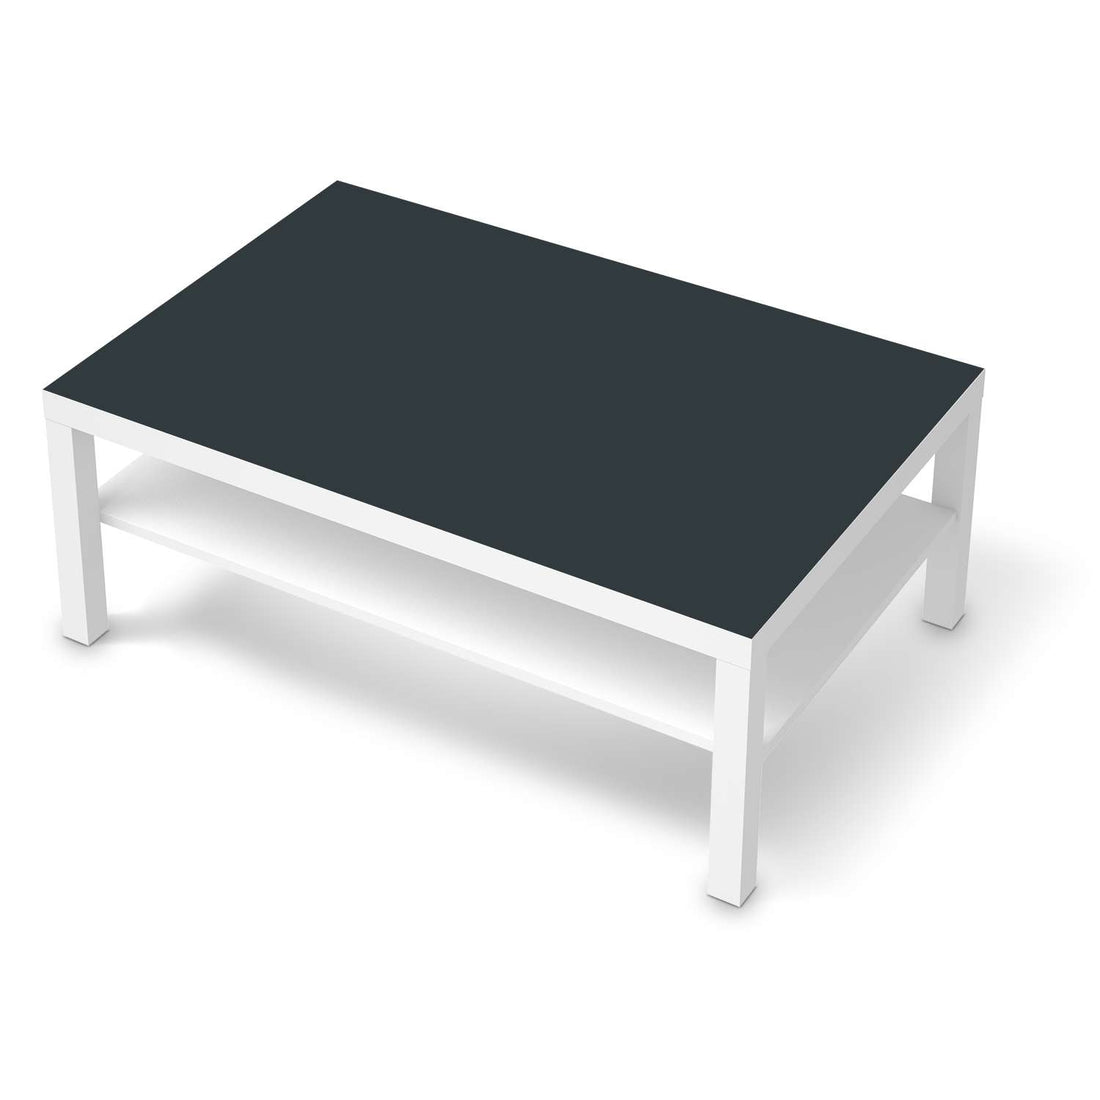 Klebefolie Blaugrau Dark - IKEA Lack Tisch 118x78 cm - weiss